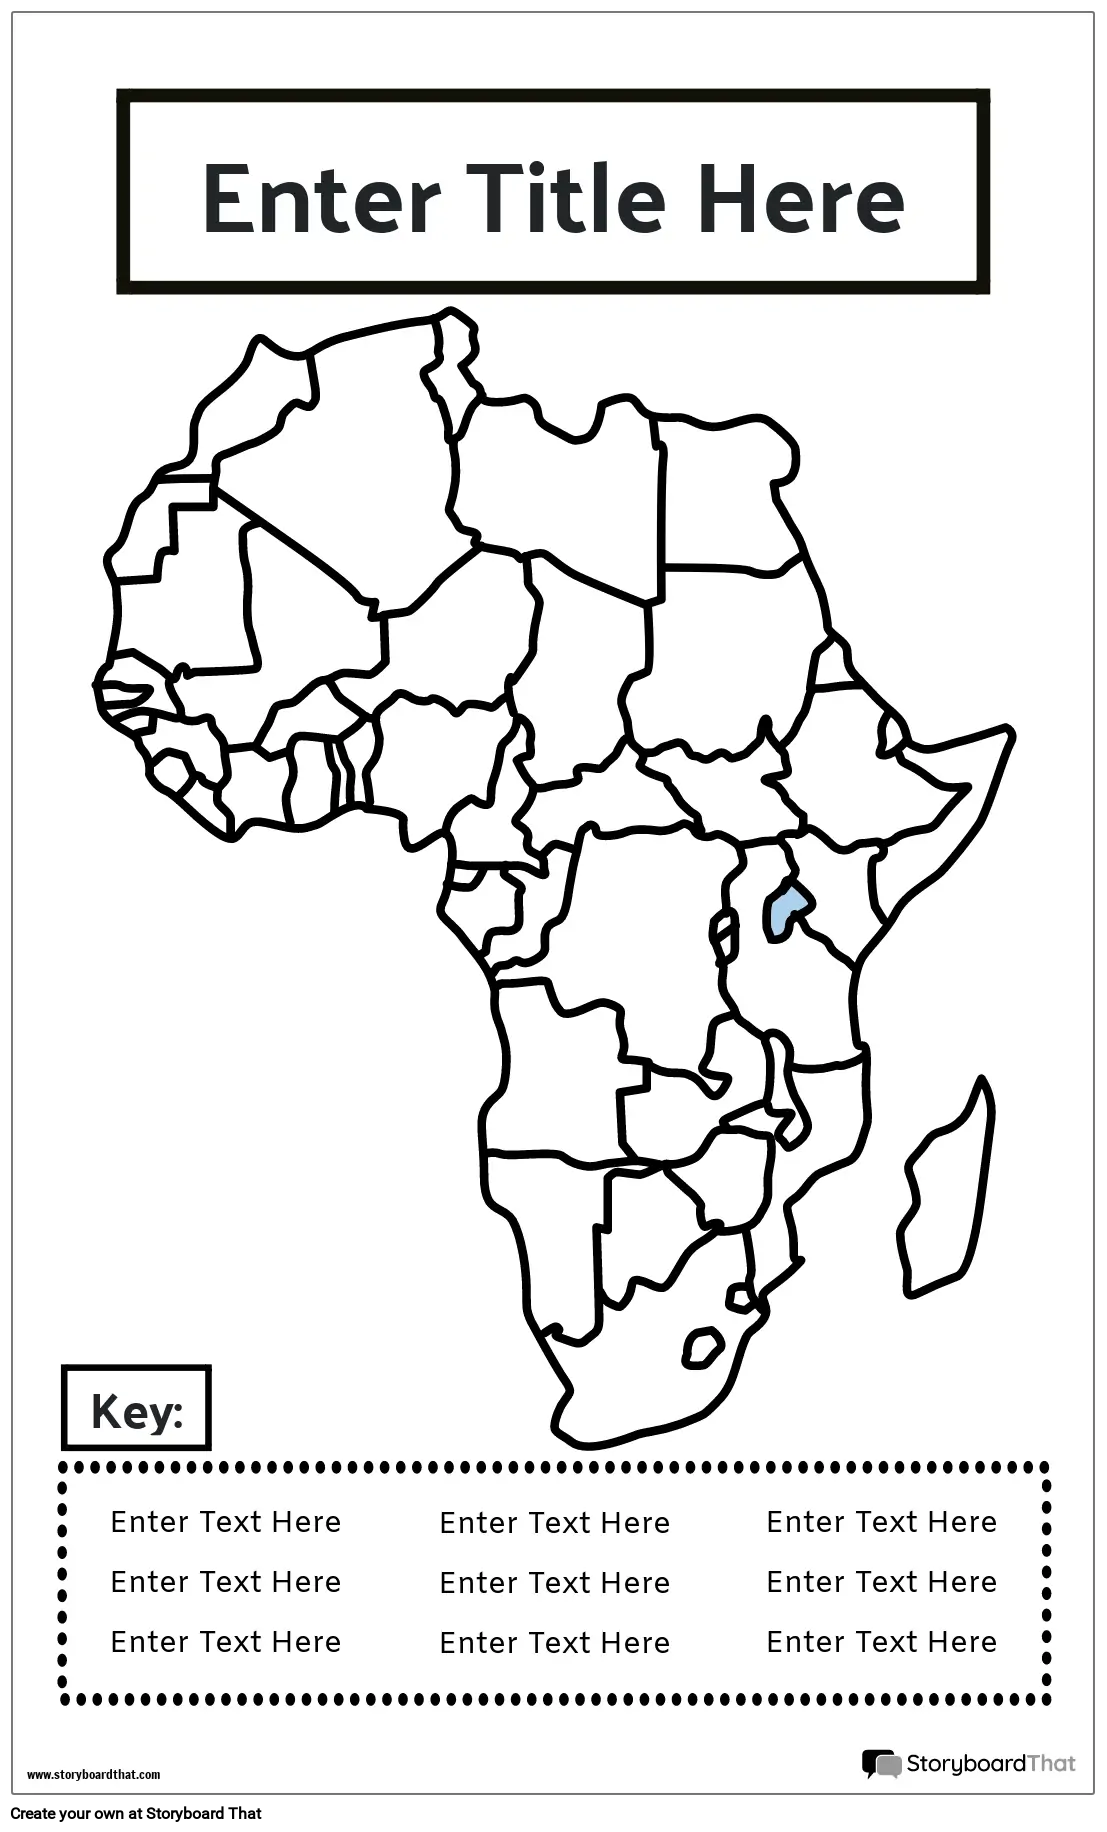 नक्शा पोस्टर 18 बीडब्ल्यू पोर्ट्रेट-अफ्रीका